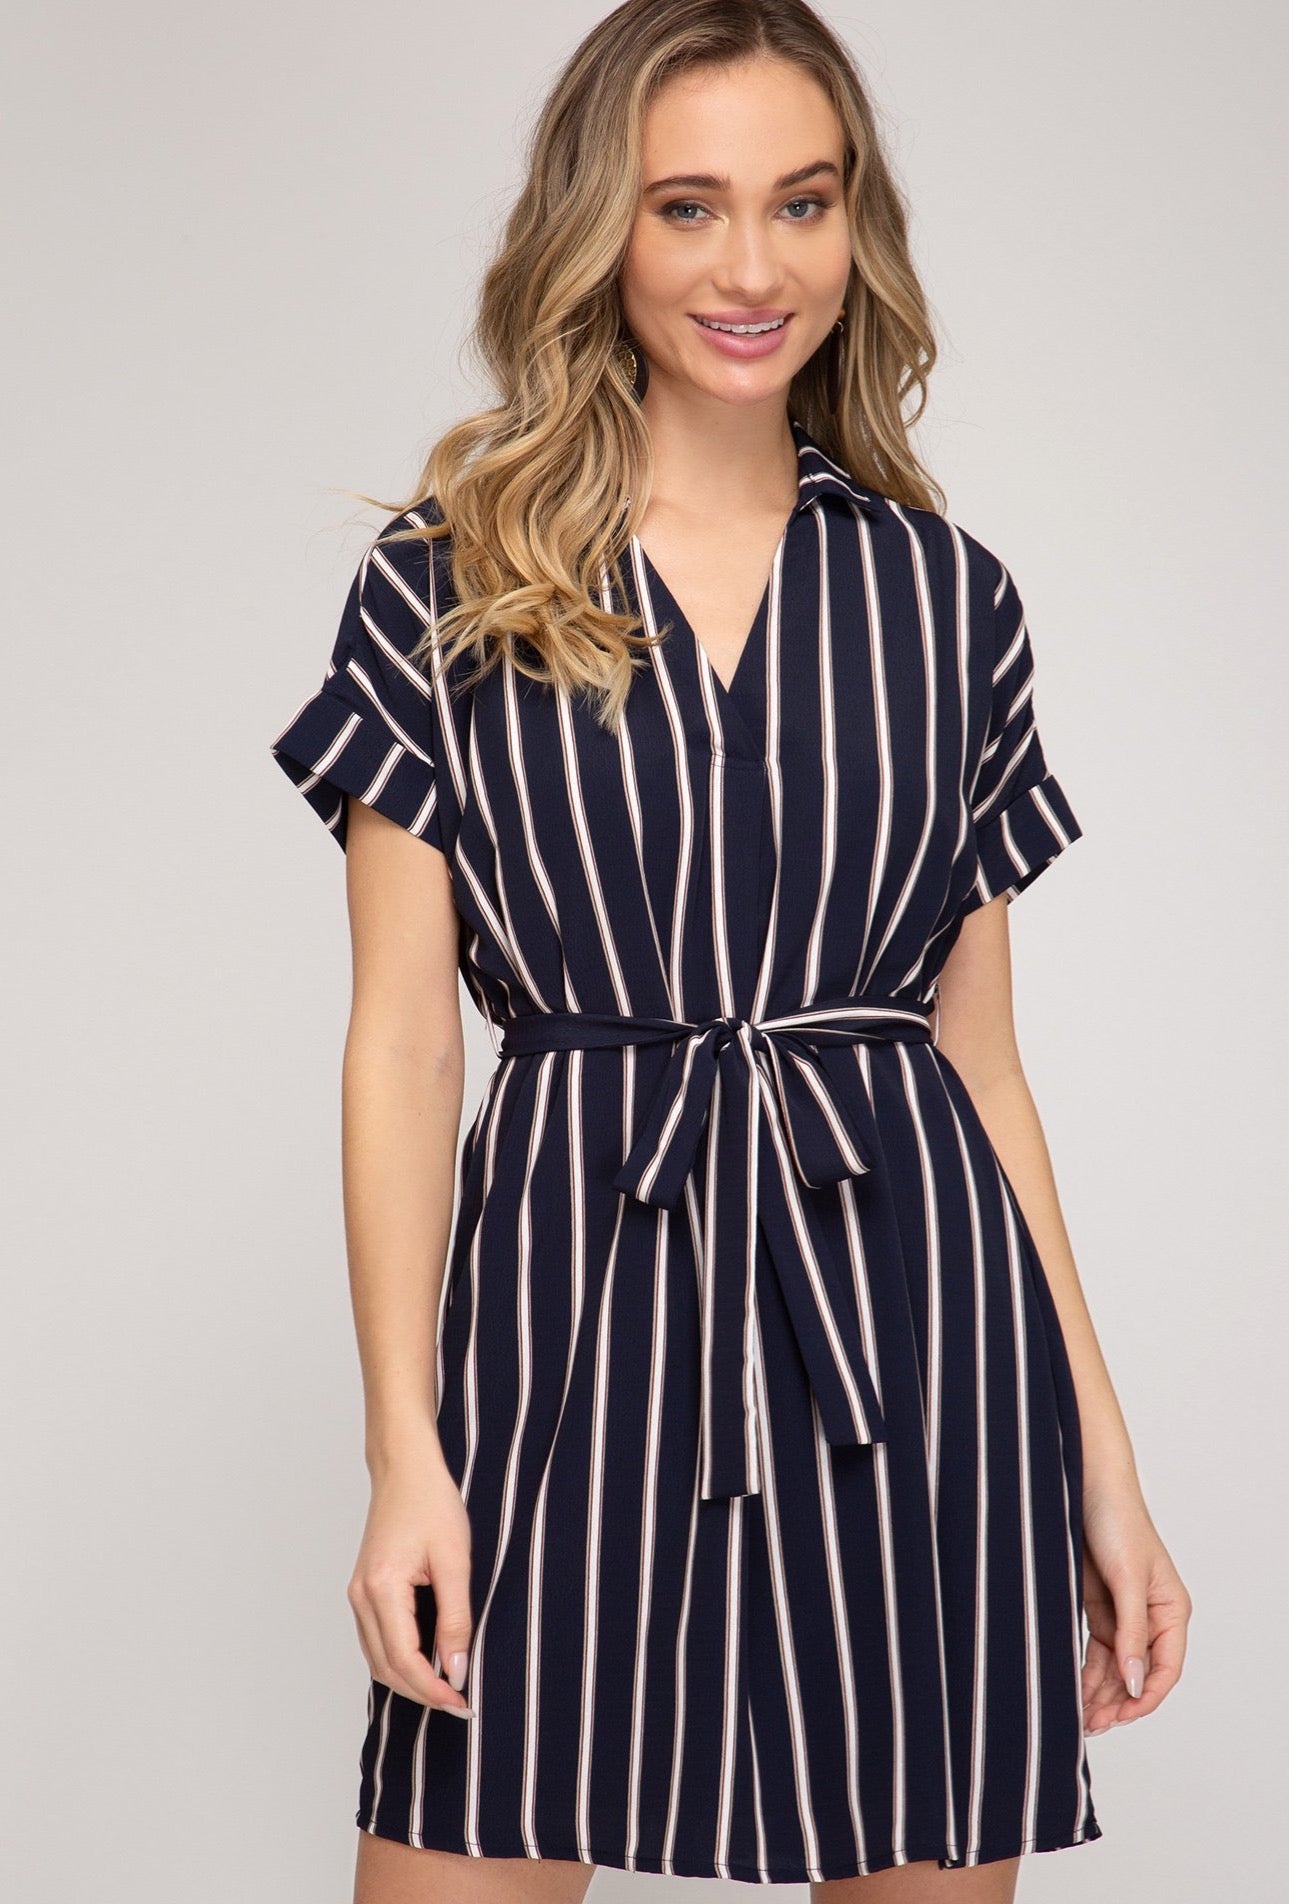 Striped Woven Shirt Dress Navy